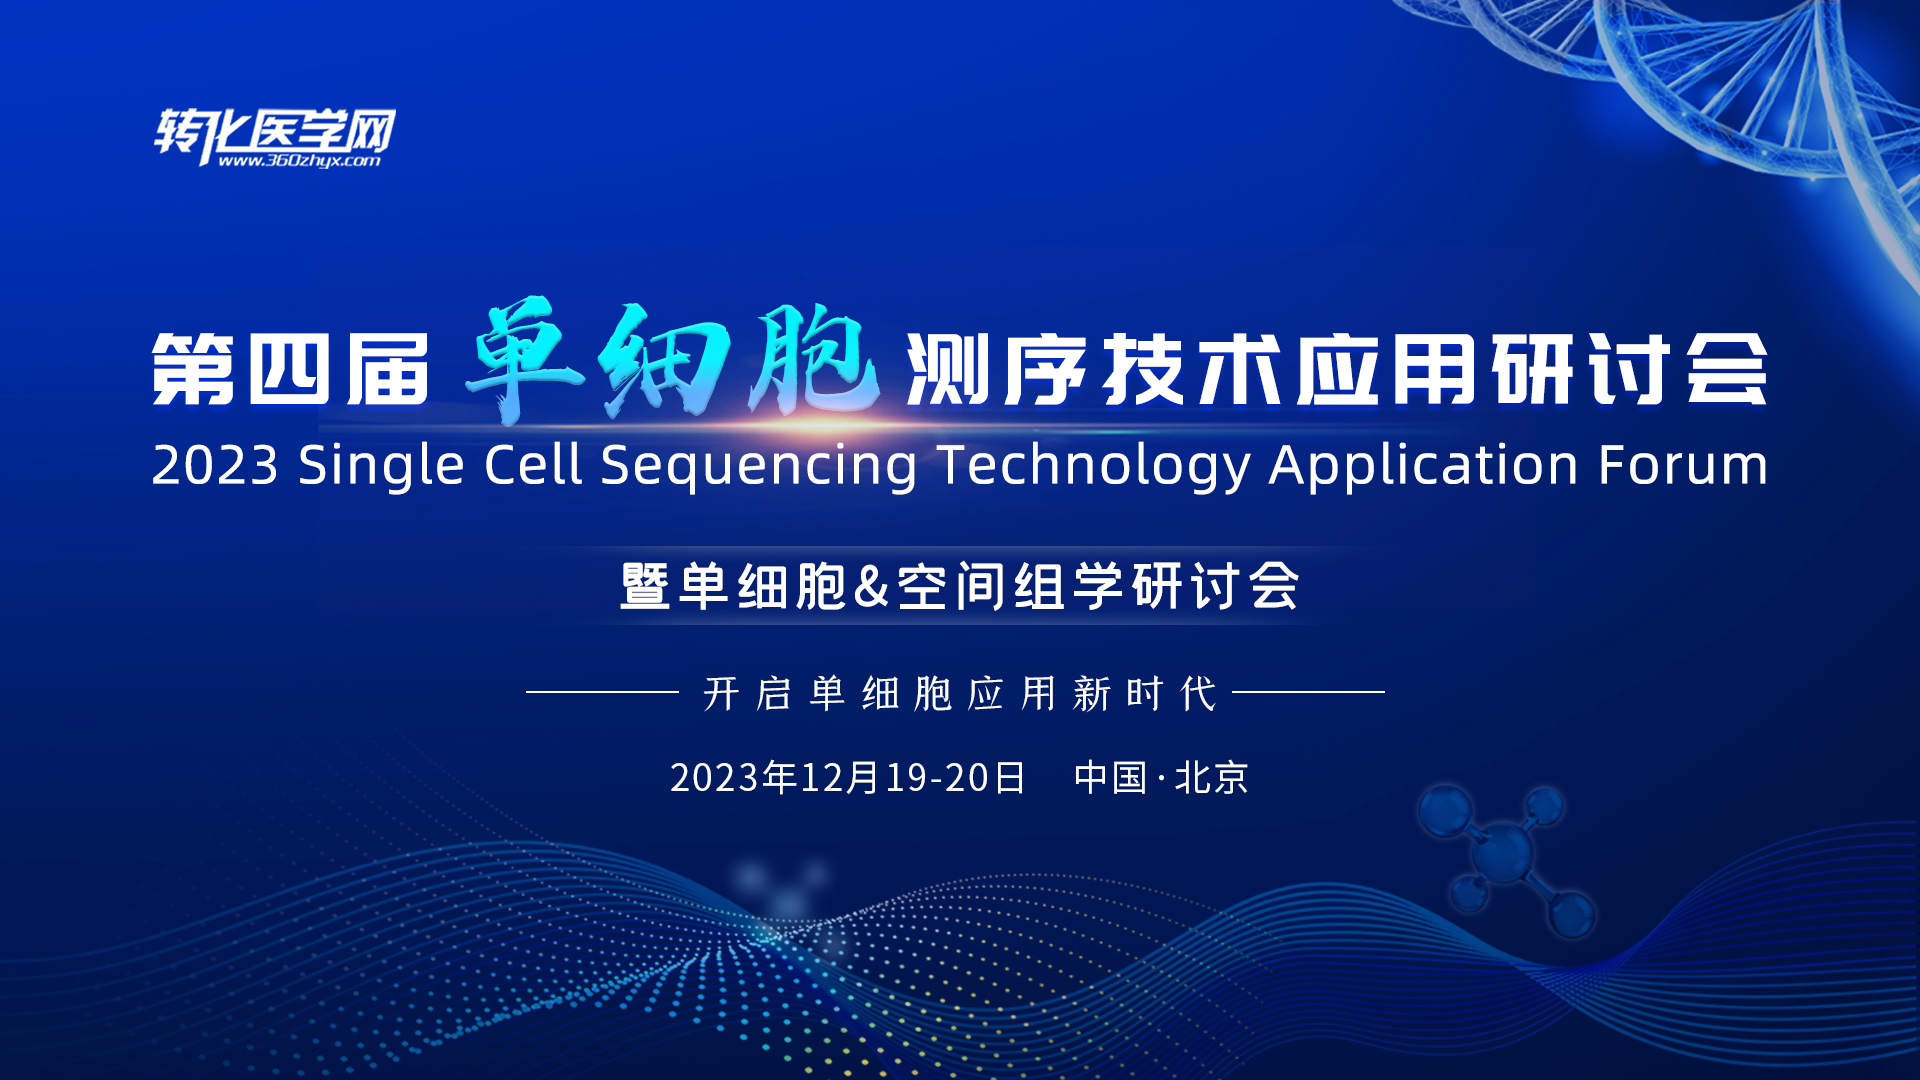 派森诺生物邀请您参加2023“第四届单细胞测序技术应用研讨会暨单细胞&空间组学研讨会”